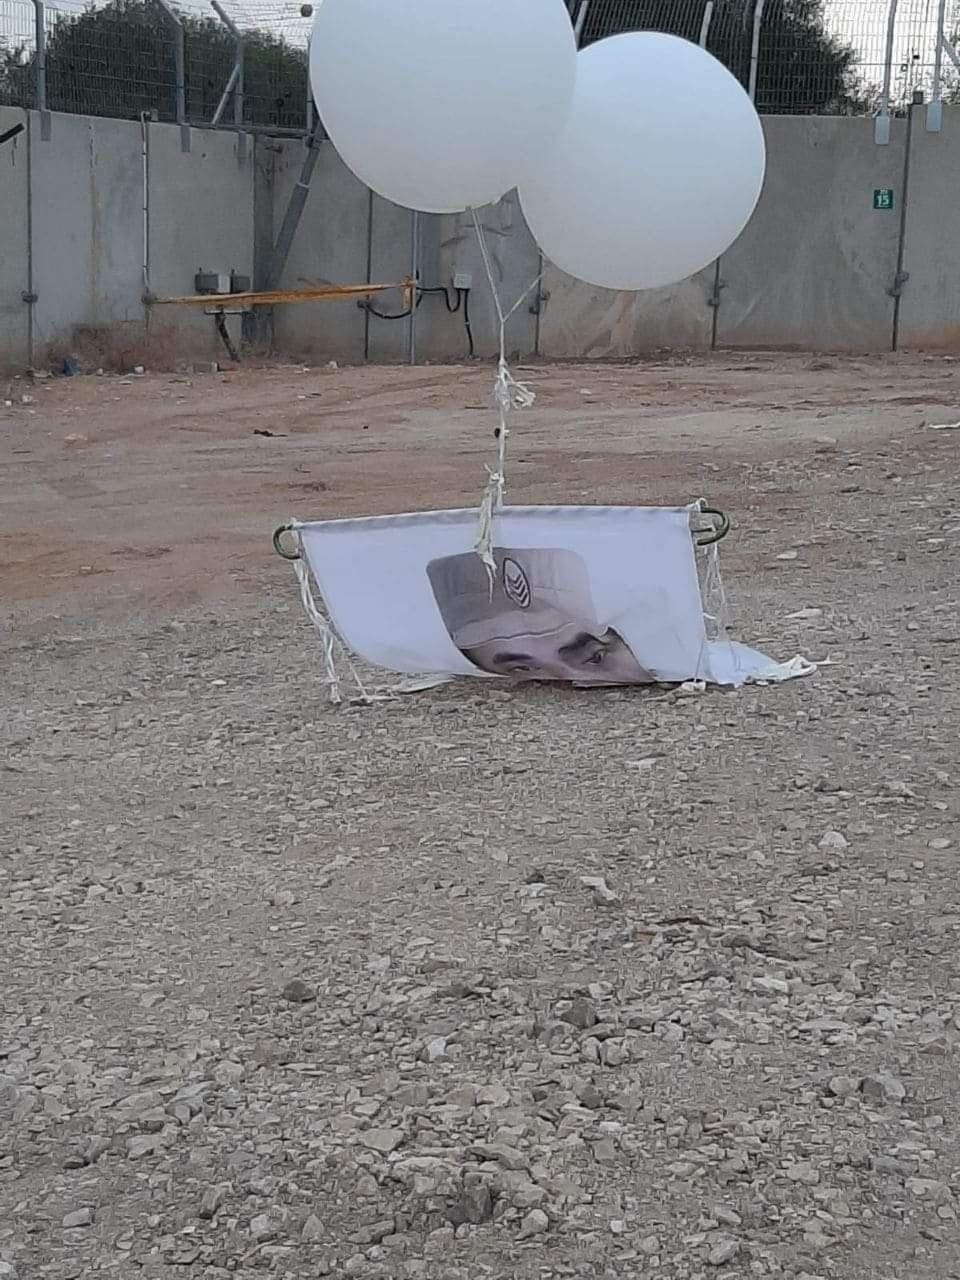 سقوط بالونات في قاعدة عسكرية إسرائيلية عليها صورة أسير